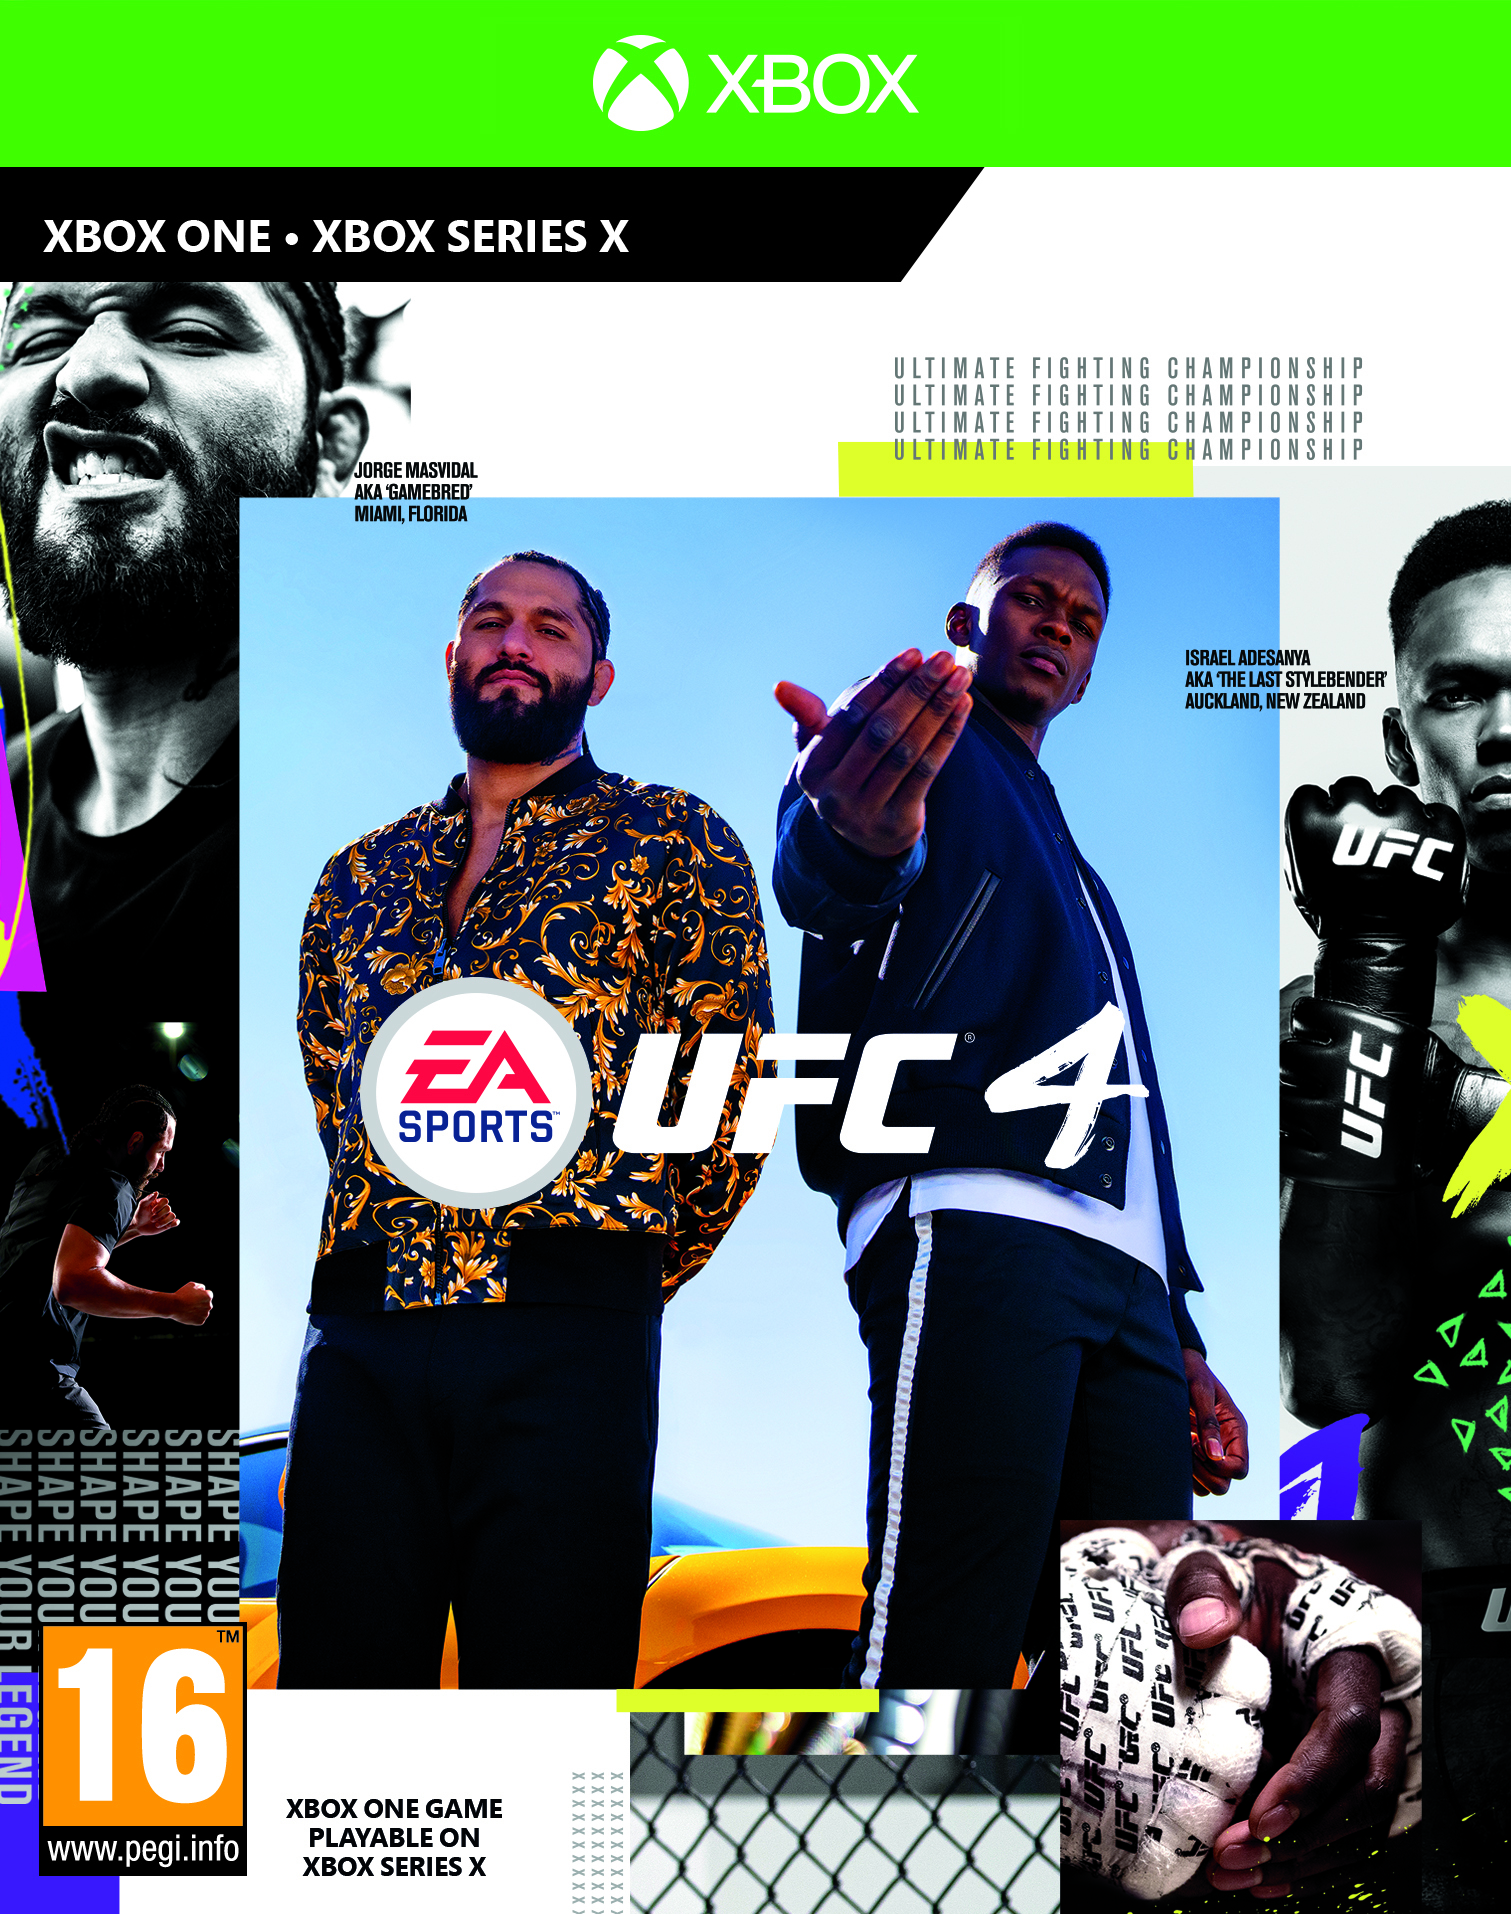 jaquette reduite de EA Sports UFC 4 sur Xbox One